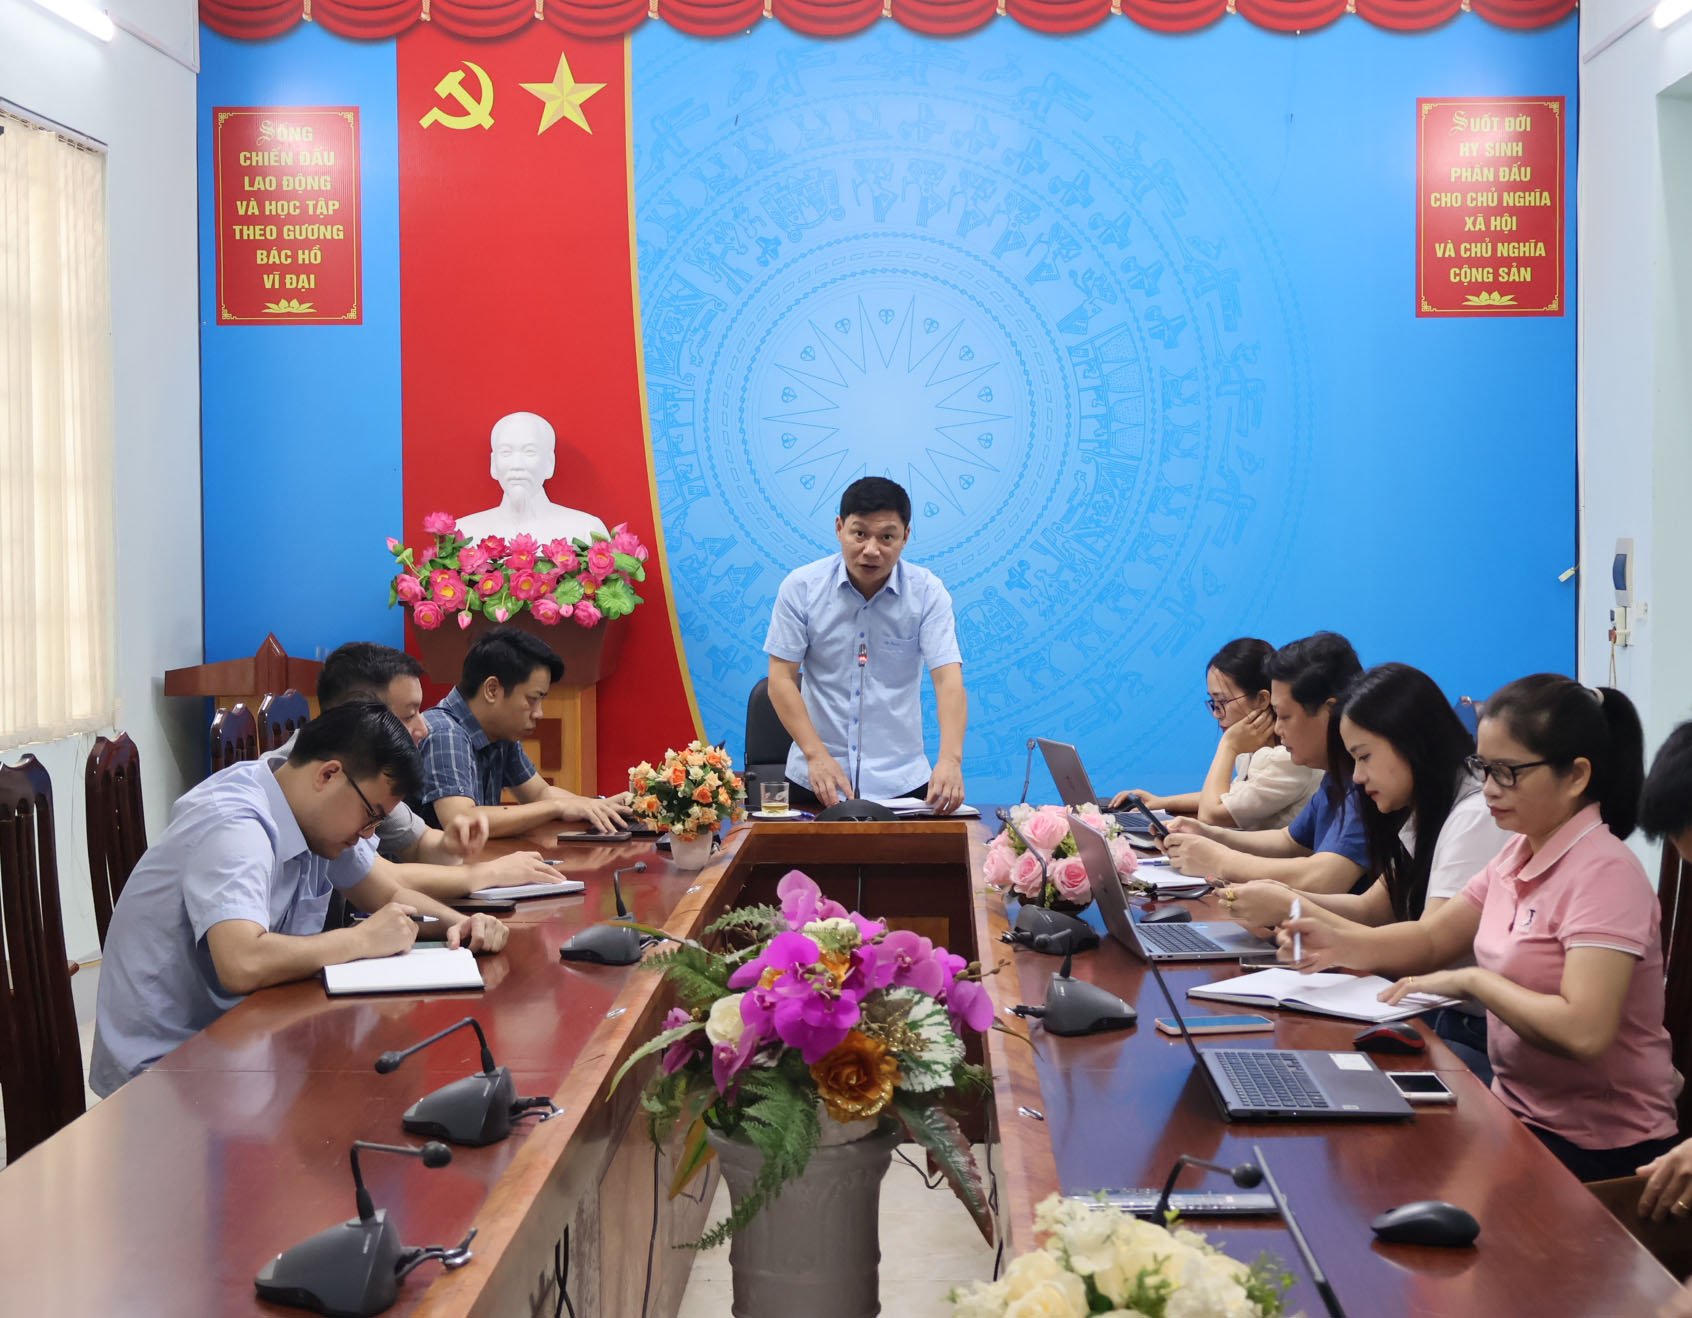 Đồng chí Vũ Hùng Vương  - Phó Giám đốc Sở Y tế khai mạc hội nghị trực tuyến 